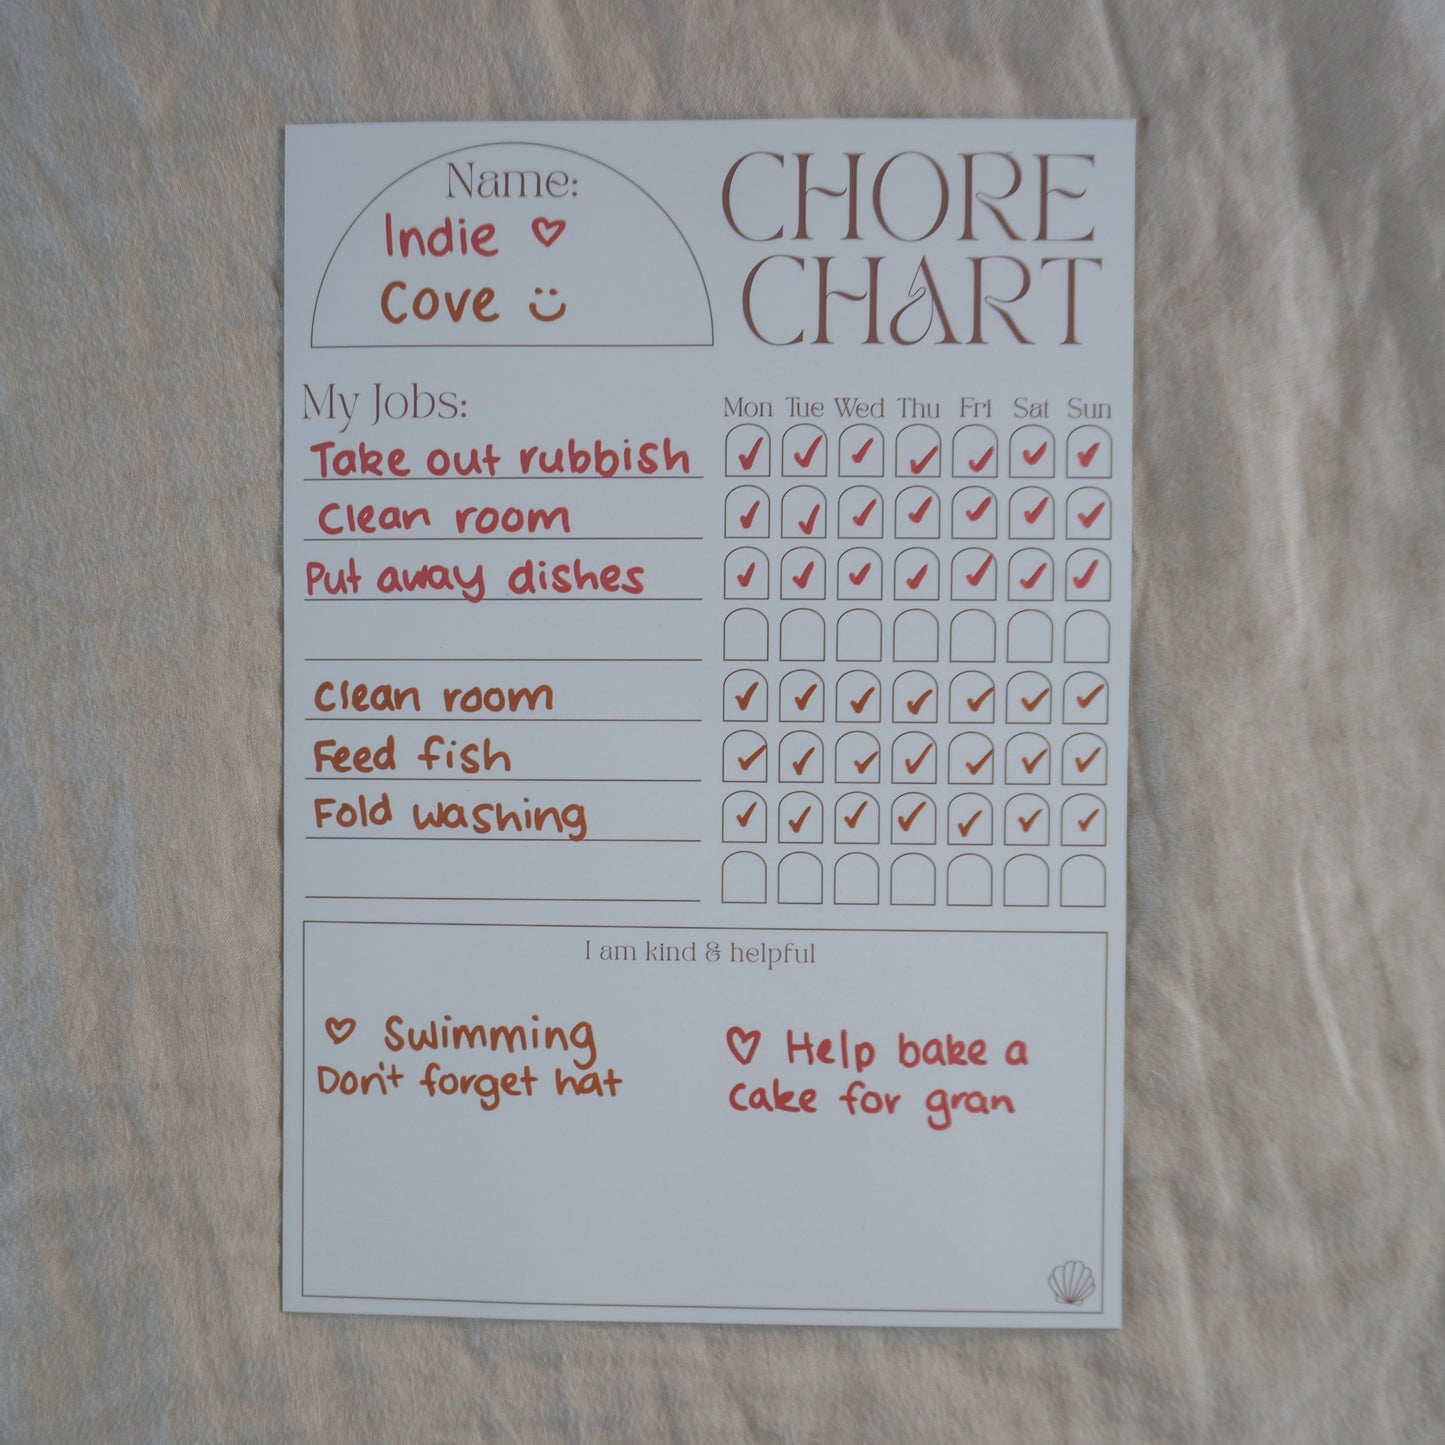 Palma Chore Chart